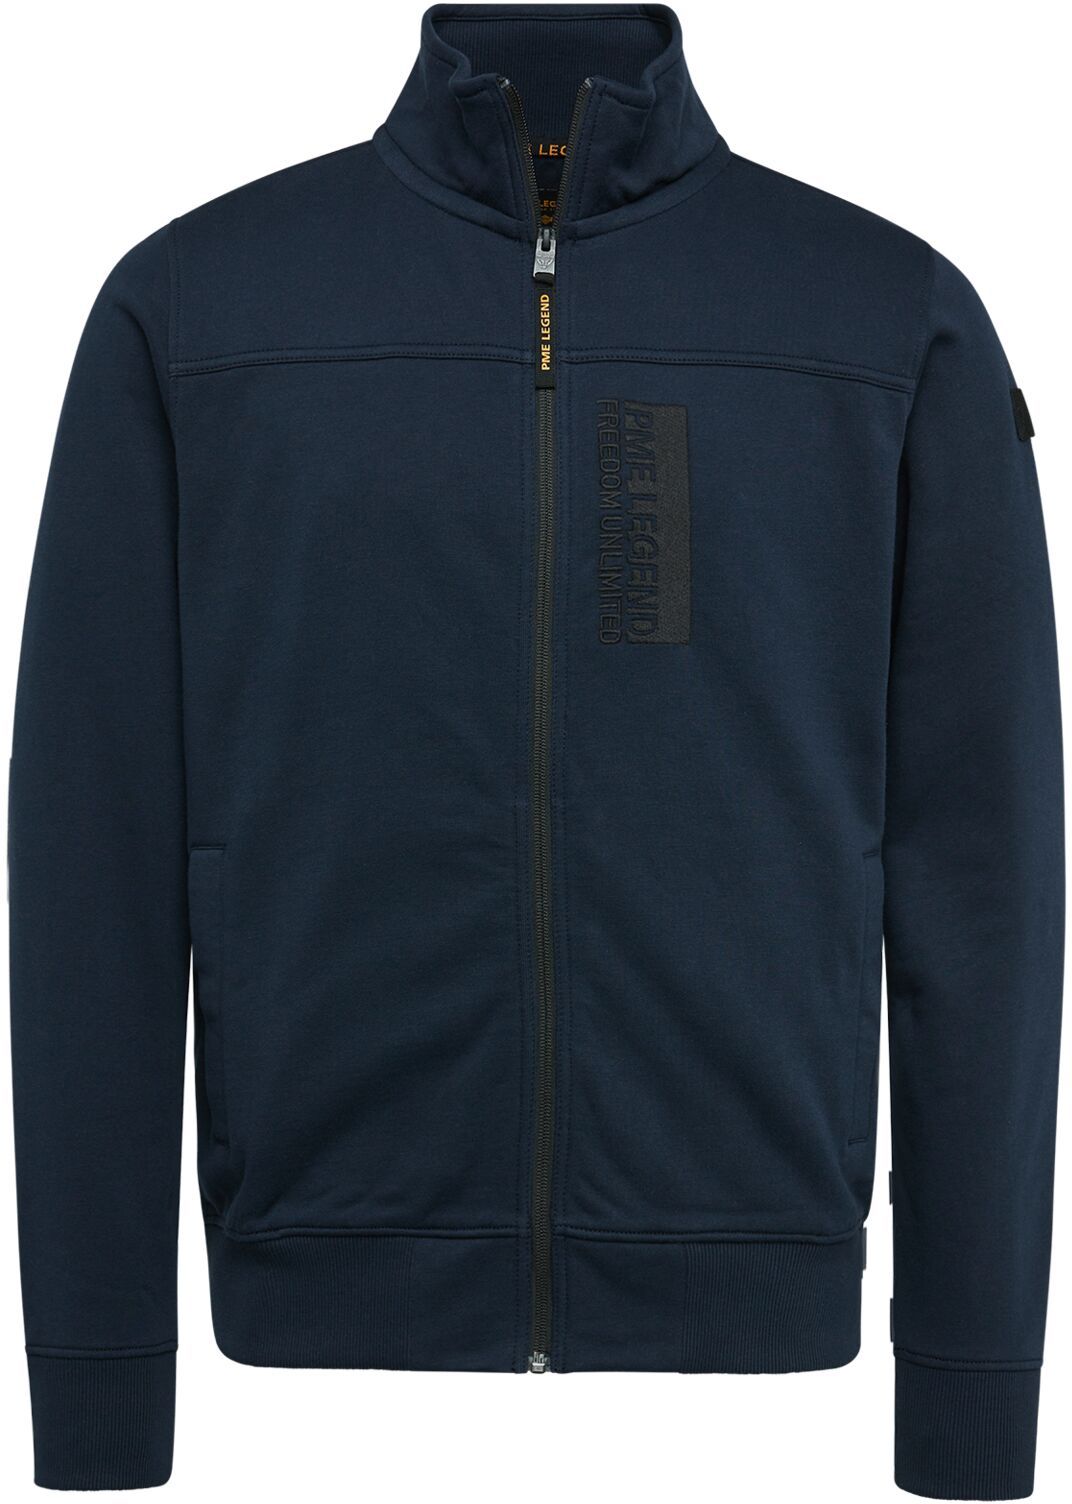 PME Legend Zip Jacket Fleece Navy  Dark Blue Blue size L